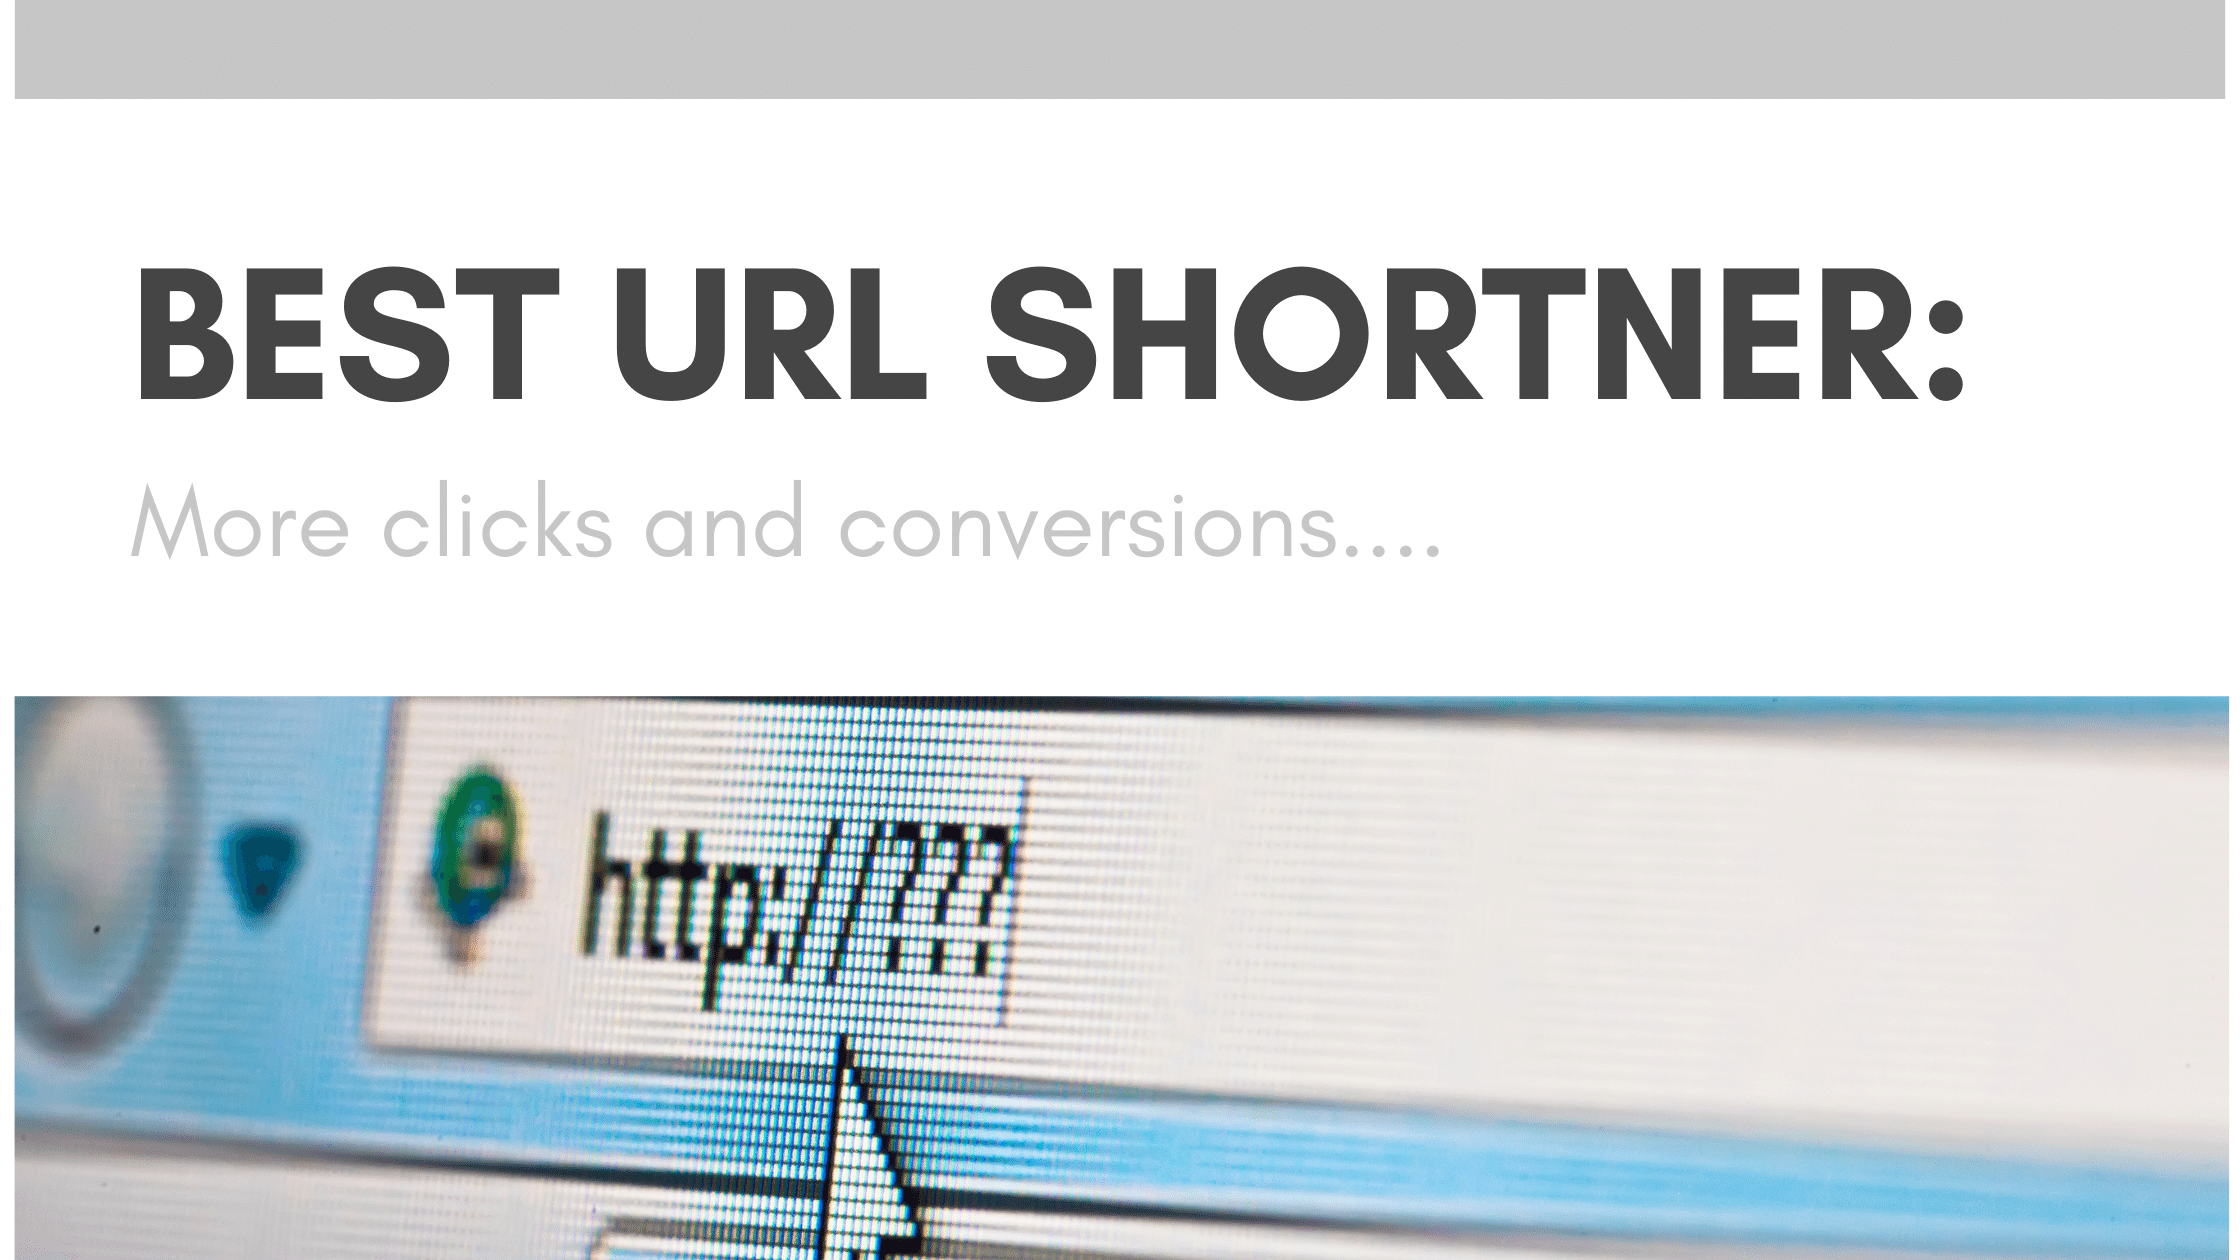 10 Best URL Shortener in 2020 (Seriously)